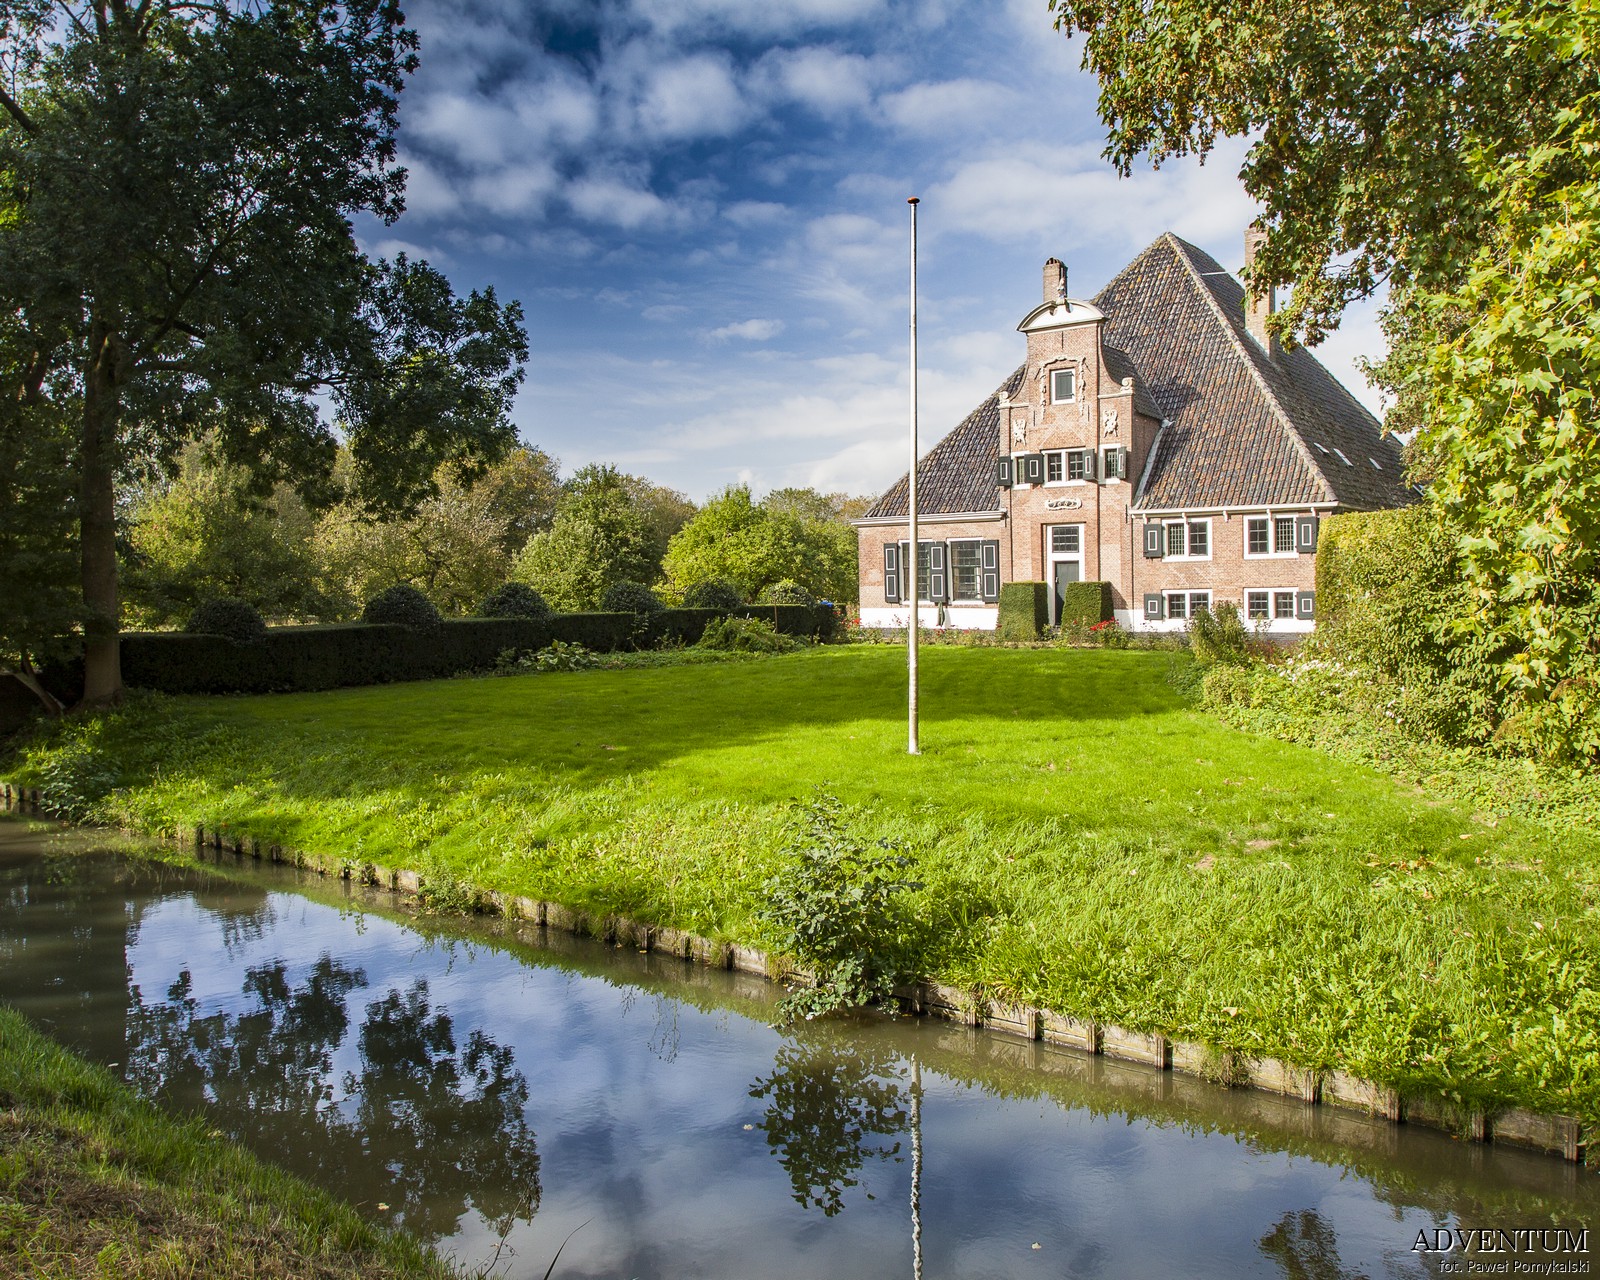 Holandia Polder Beemster Atrakcje Zwiedzanie co Zobaczyć Amsterdam Rotterdam Haga Kanały Wiatraki